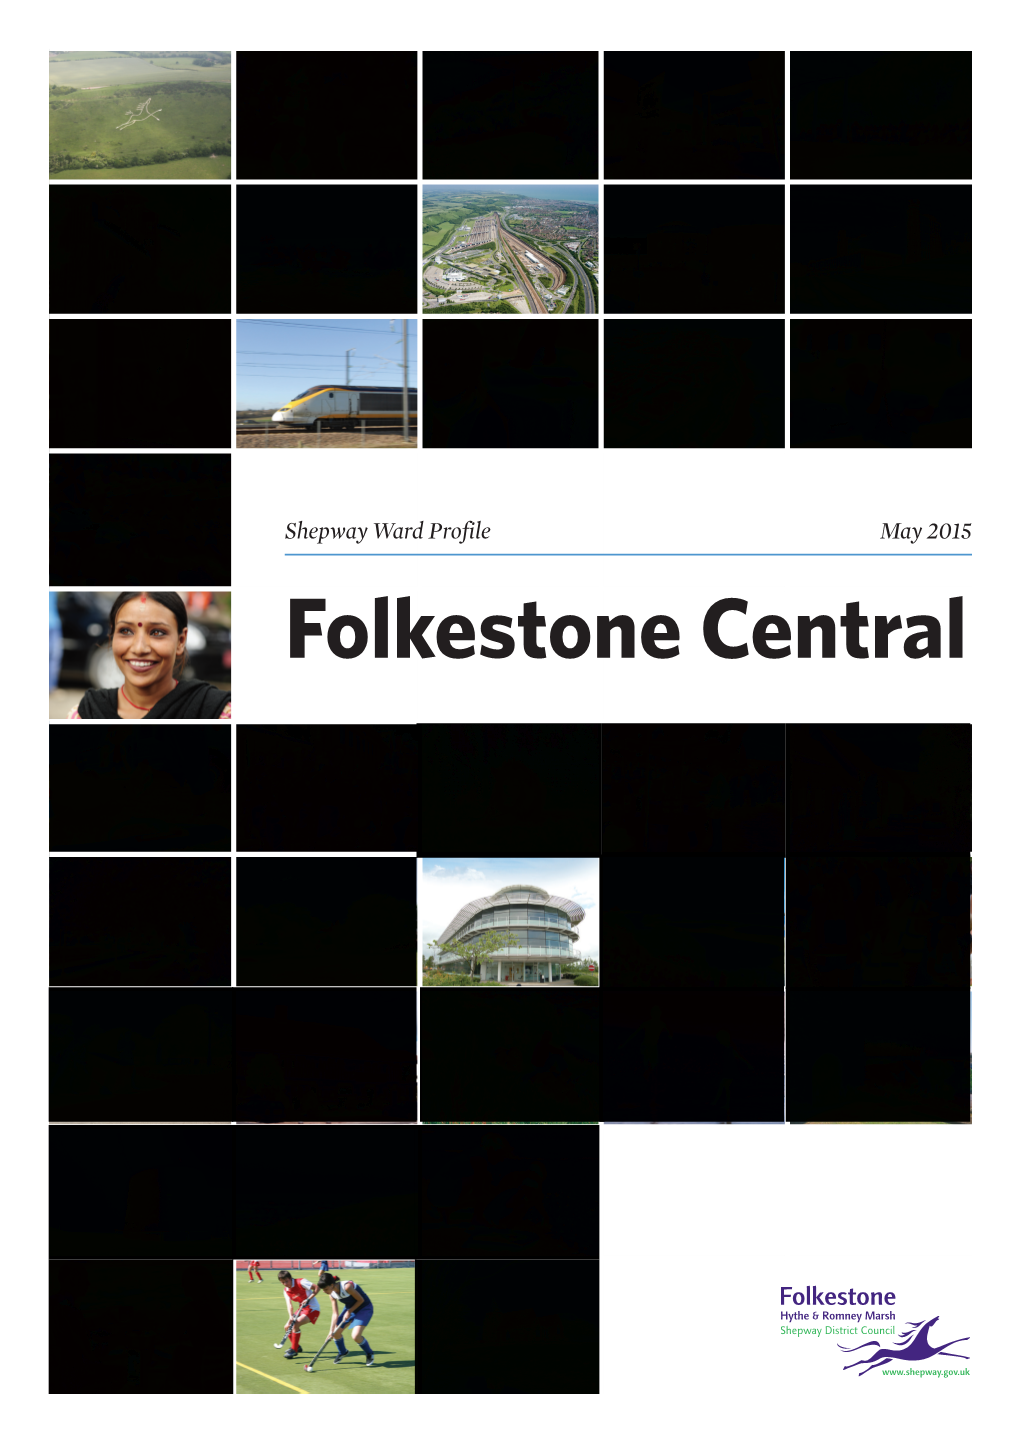 Folkestone Central Ward Profile